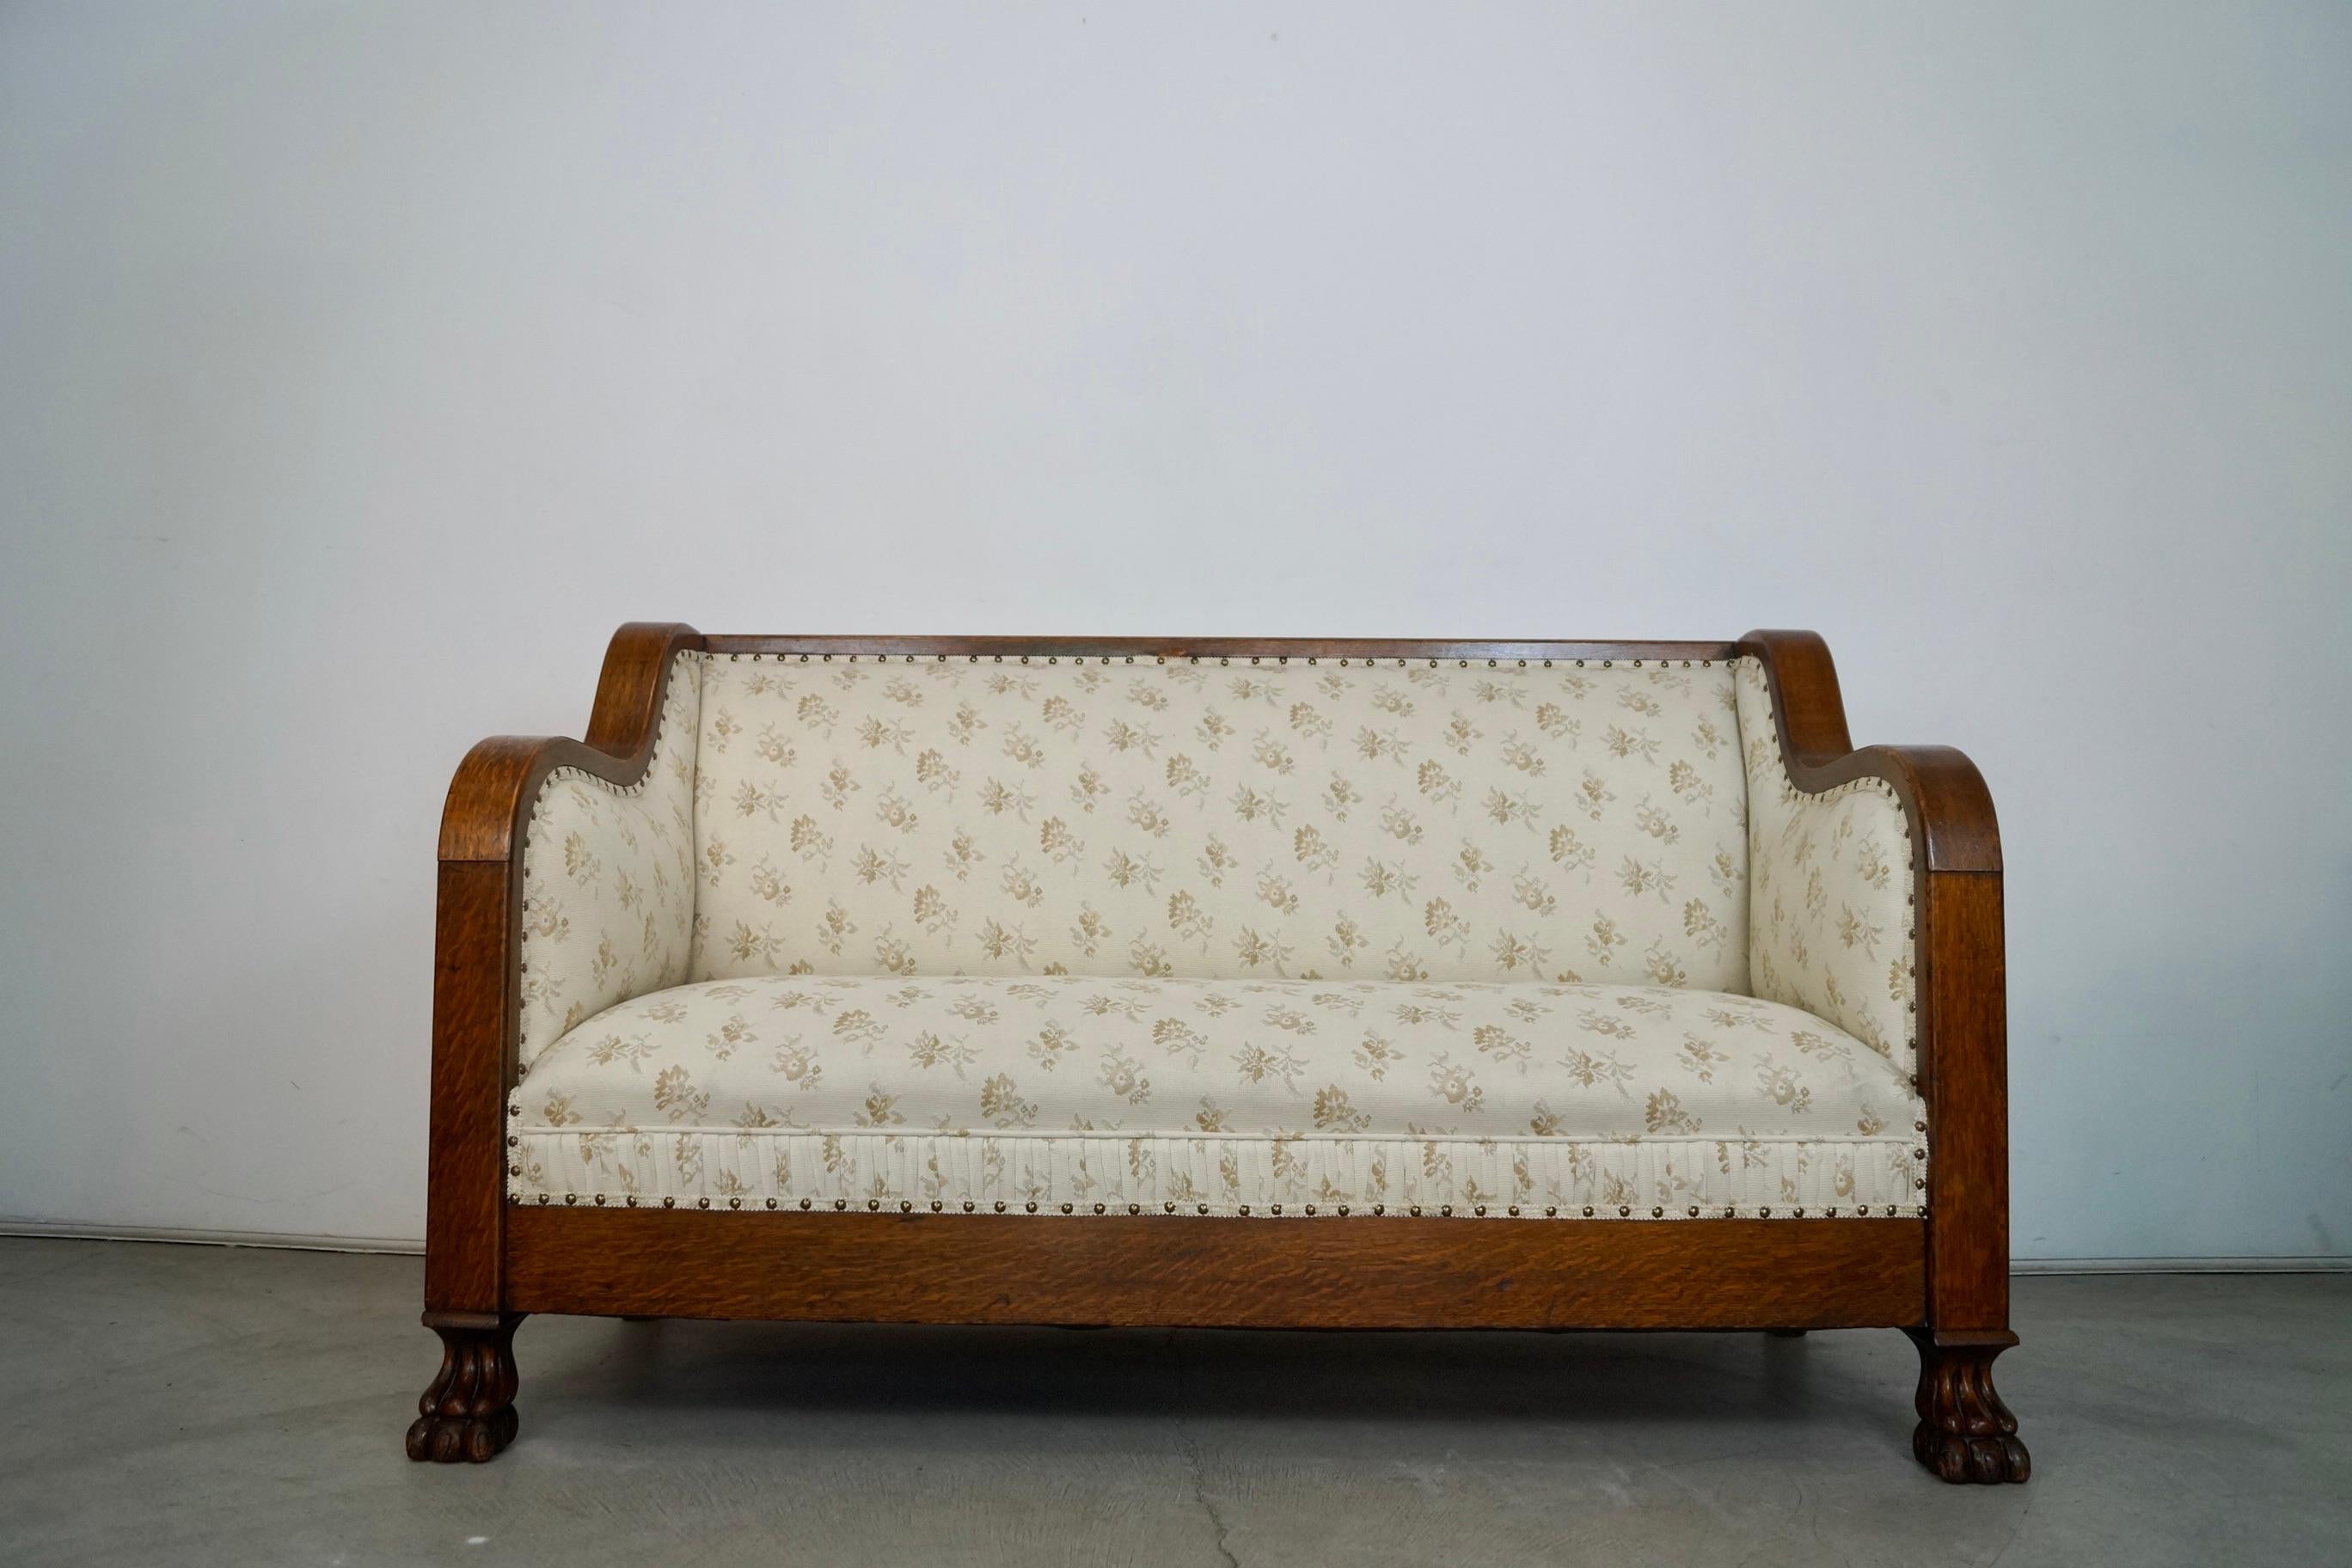 Antike Craftsman-Couch zu verkaufen. Über 100 Jahre alt und in ausgezeichnetem Zustand. Das Gestell besteht aus massiver Eiche mit dunkler Oberfläche und einer geblümten Polsterung im Vintage-Stil mit massiven Messingnagelköpfen. Schöne Viertel